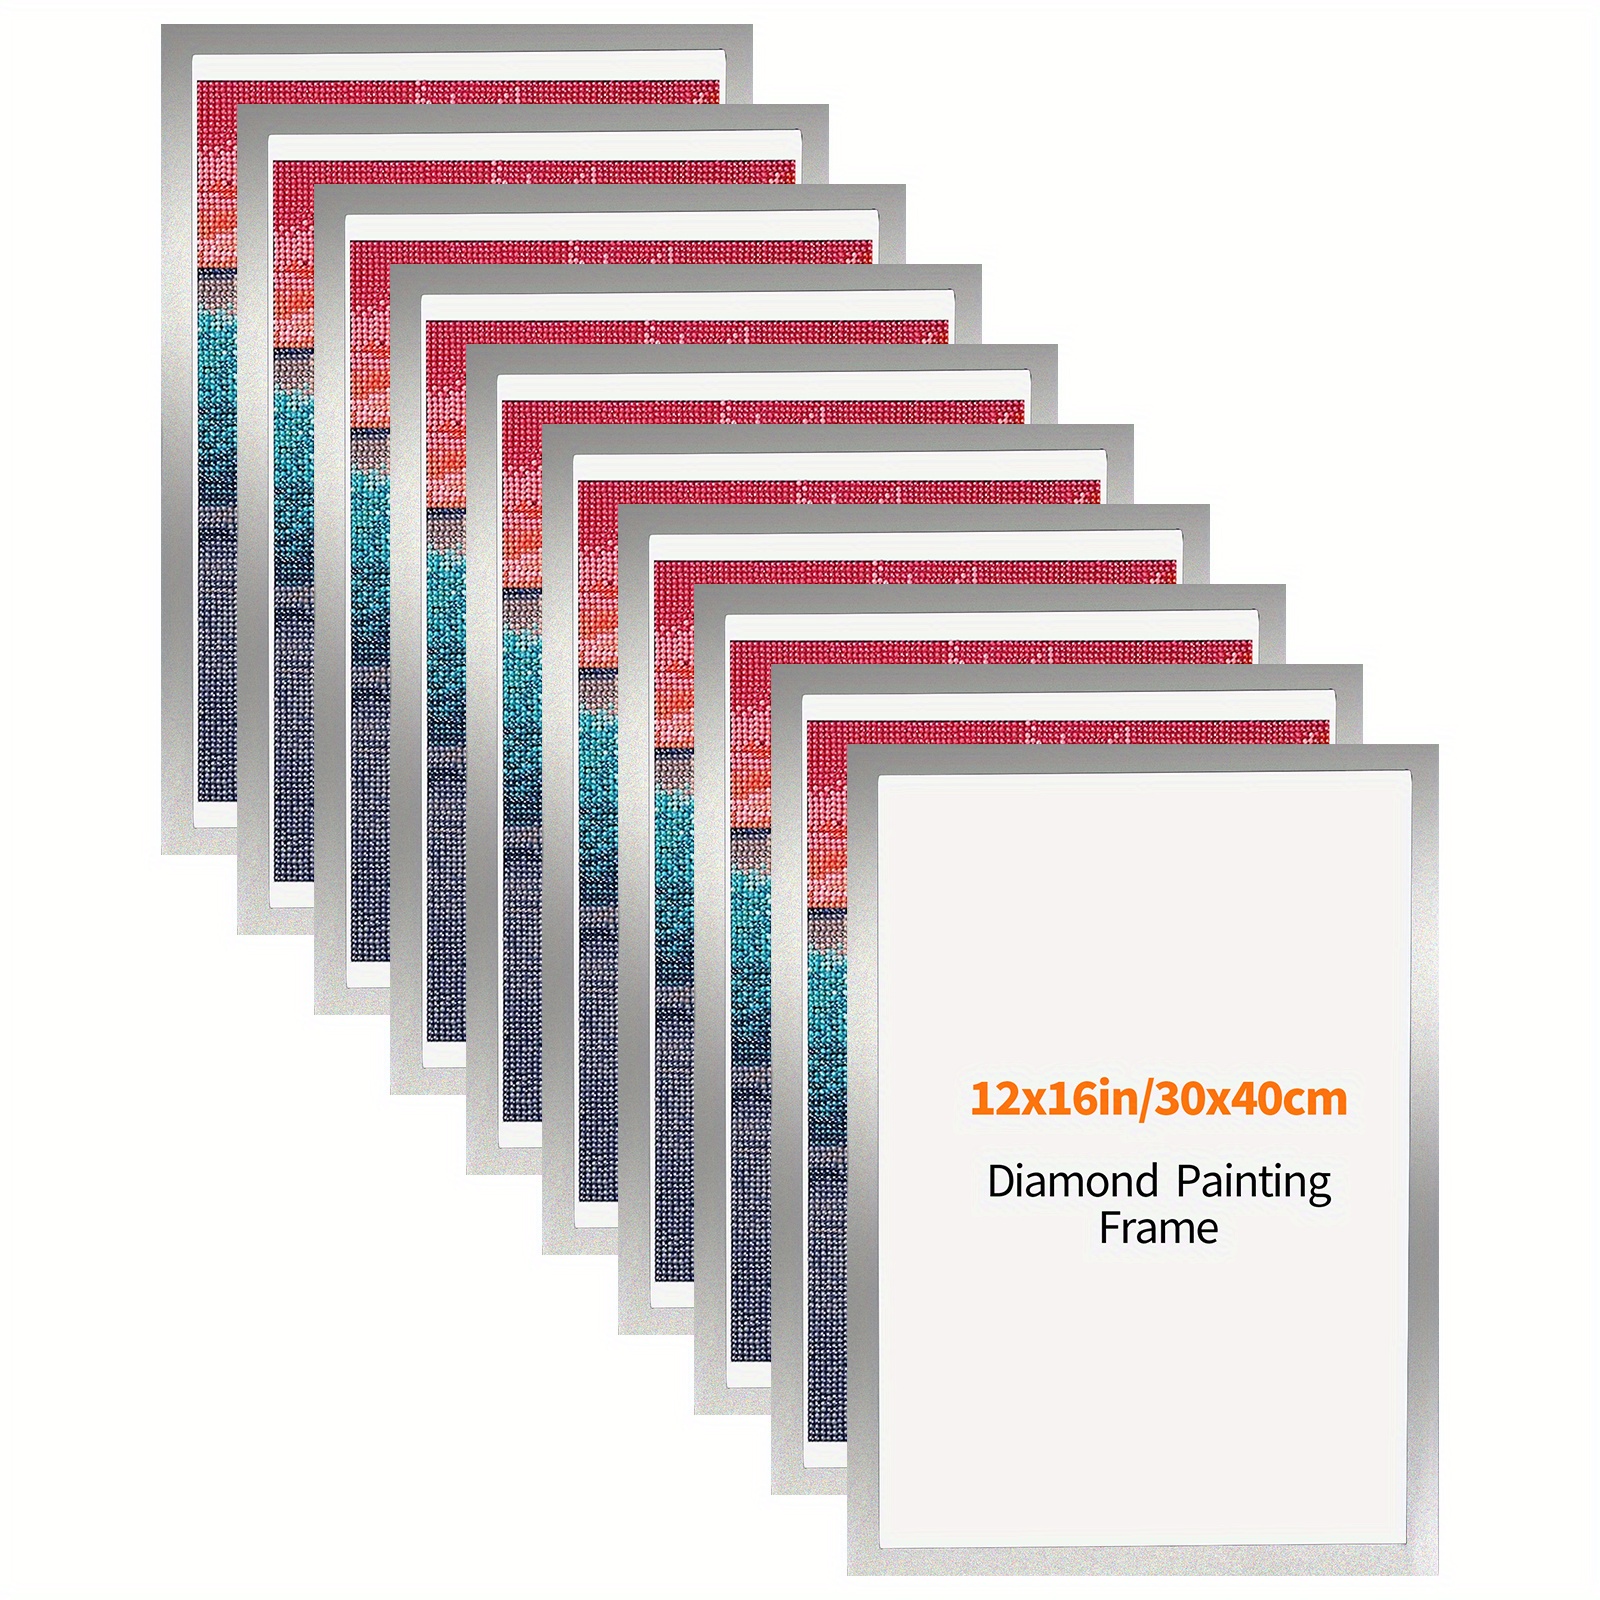 Diamond Painting Frames, Frames for 12x16in/30x40cm Diamond Painting  Canvas, Magnetic Diamond Art Frame Self-Adhesive, Diamond Painting Frames  for